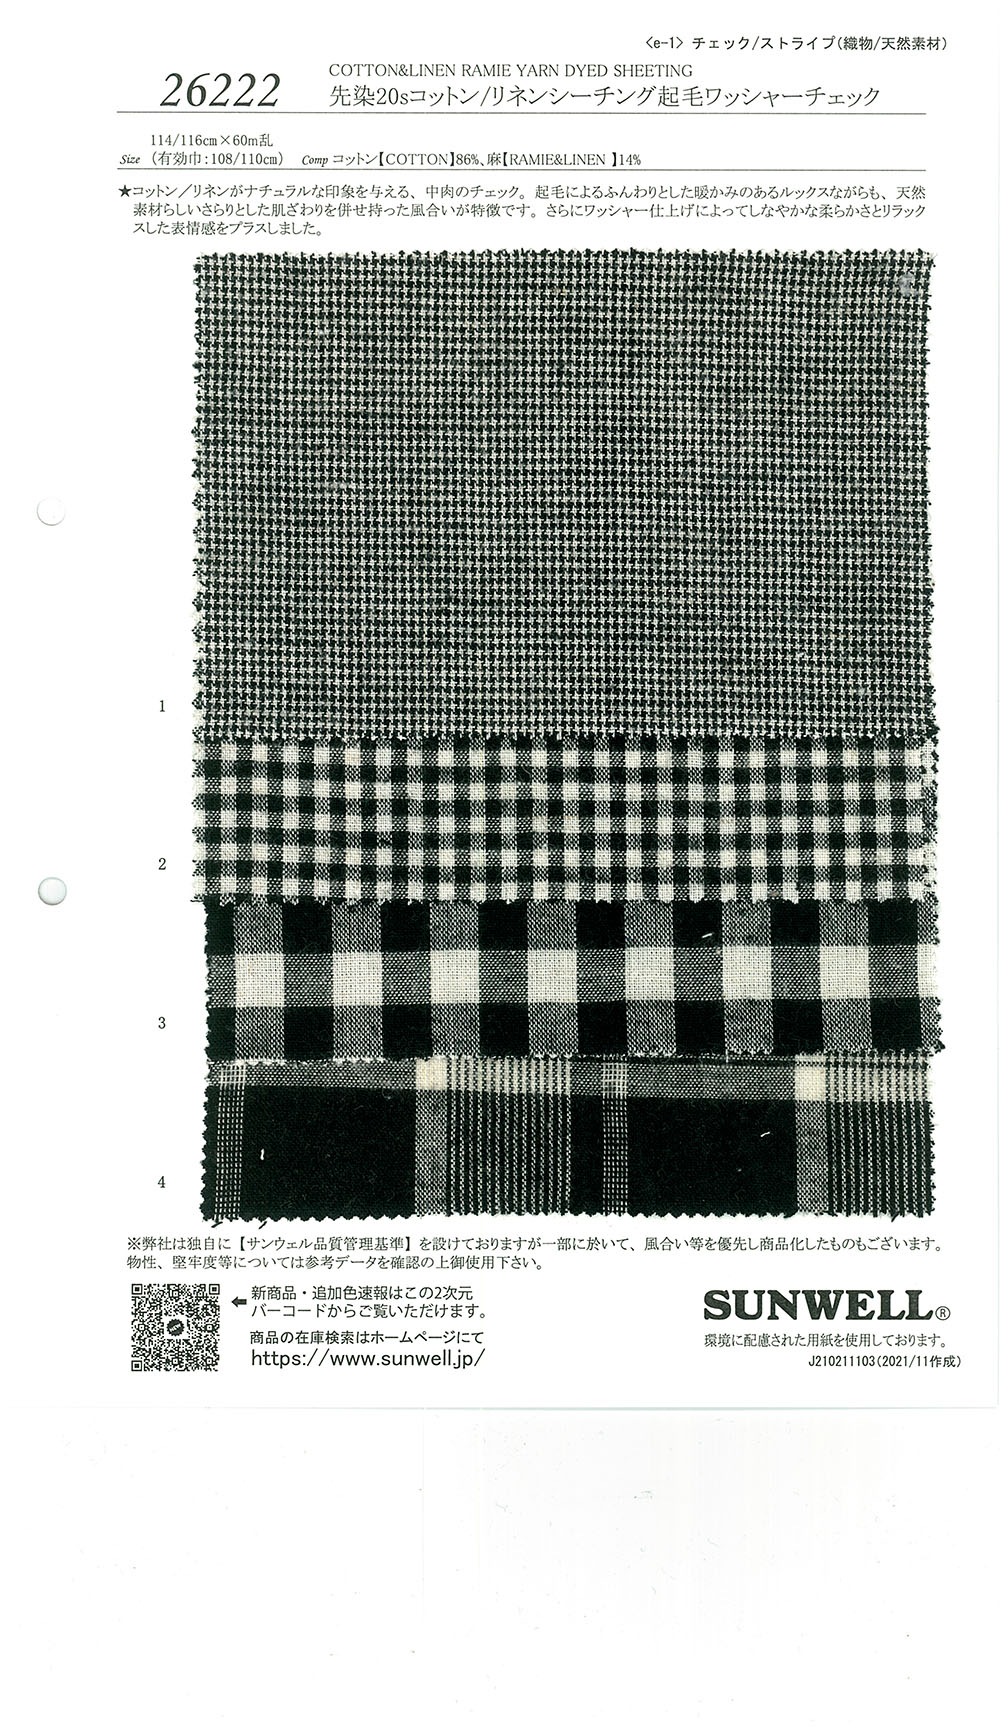 26222 Garngefärbte 20 Einfädige Baumwolle/Leinen Loomstate Fuzzy Washer Processing Check[Textilgewebe] SUNWELL